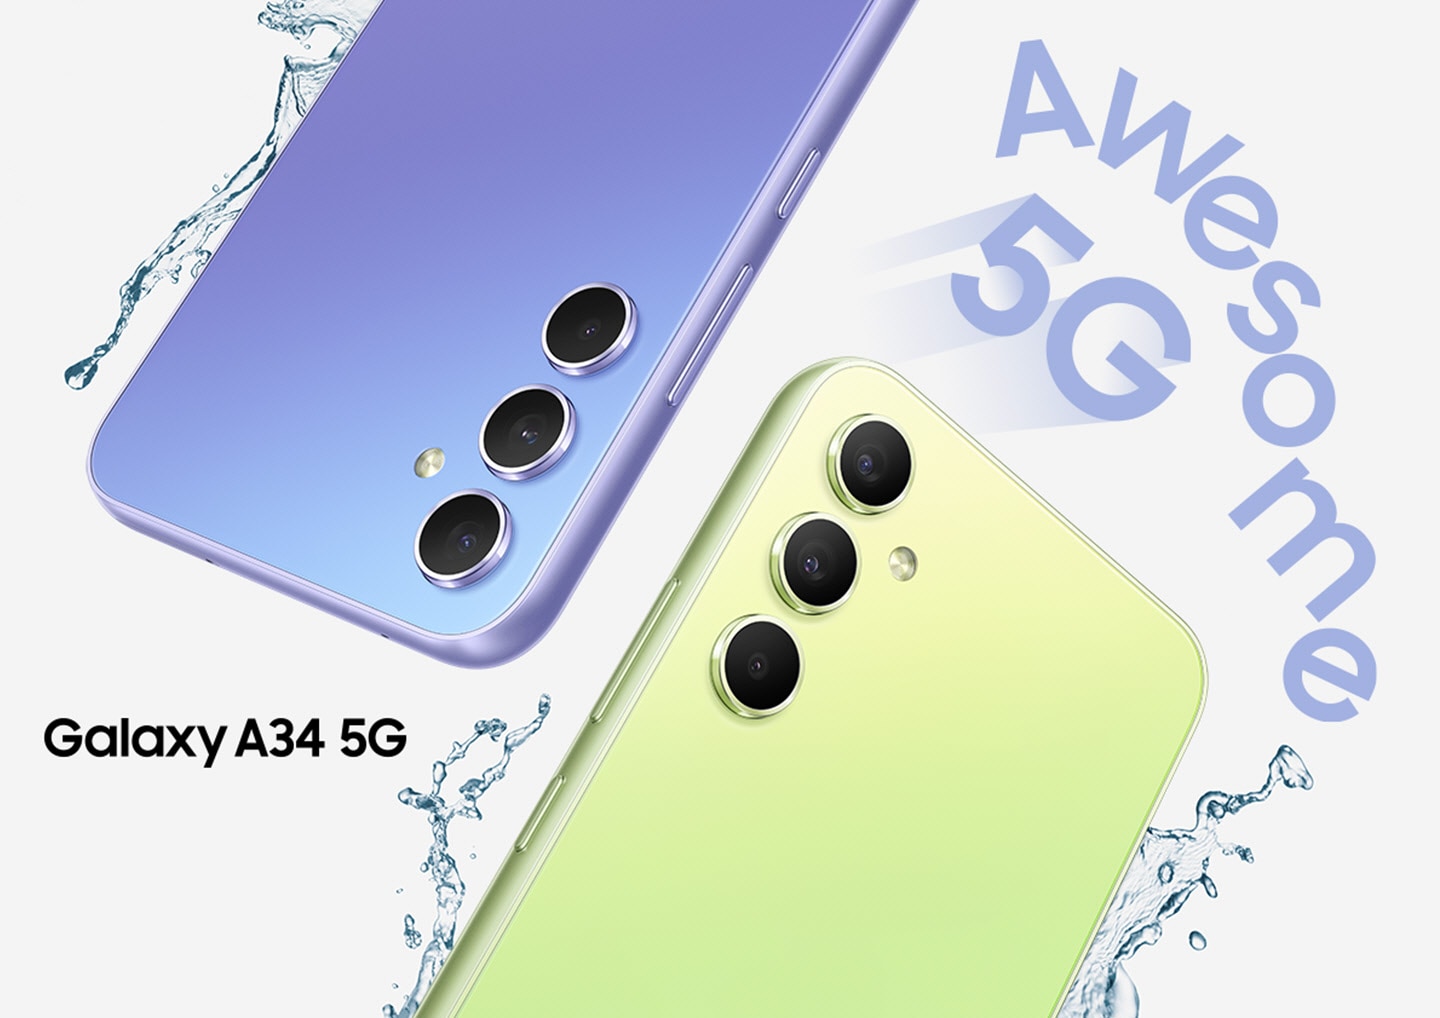 Два Galaxy A34 5G демонстрируют верхние половины задней части: один в цвете Awesome Violet, другой в цвете Awesome Lime.  Капли воды разбрызгиваются вокруг устройств